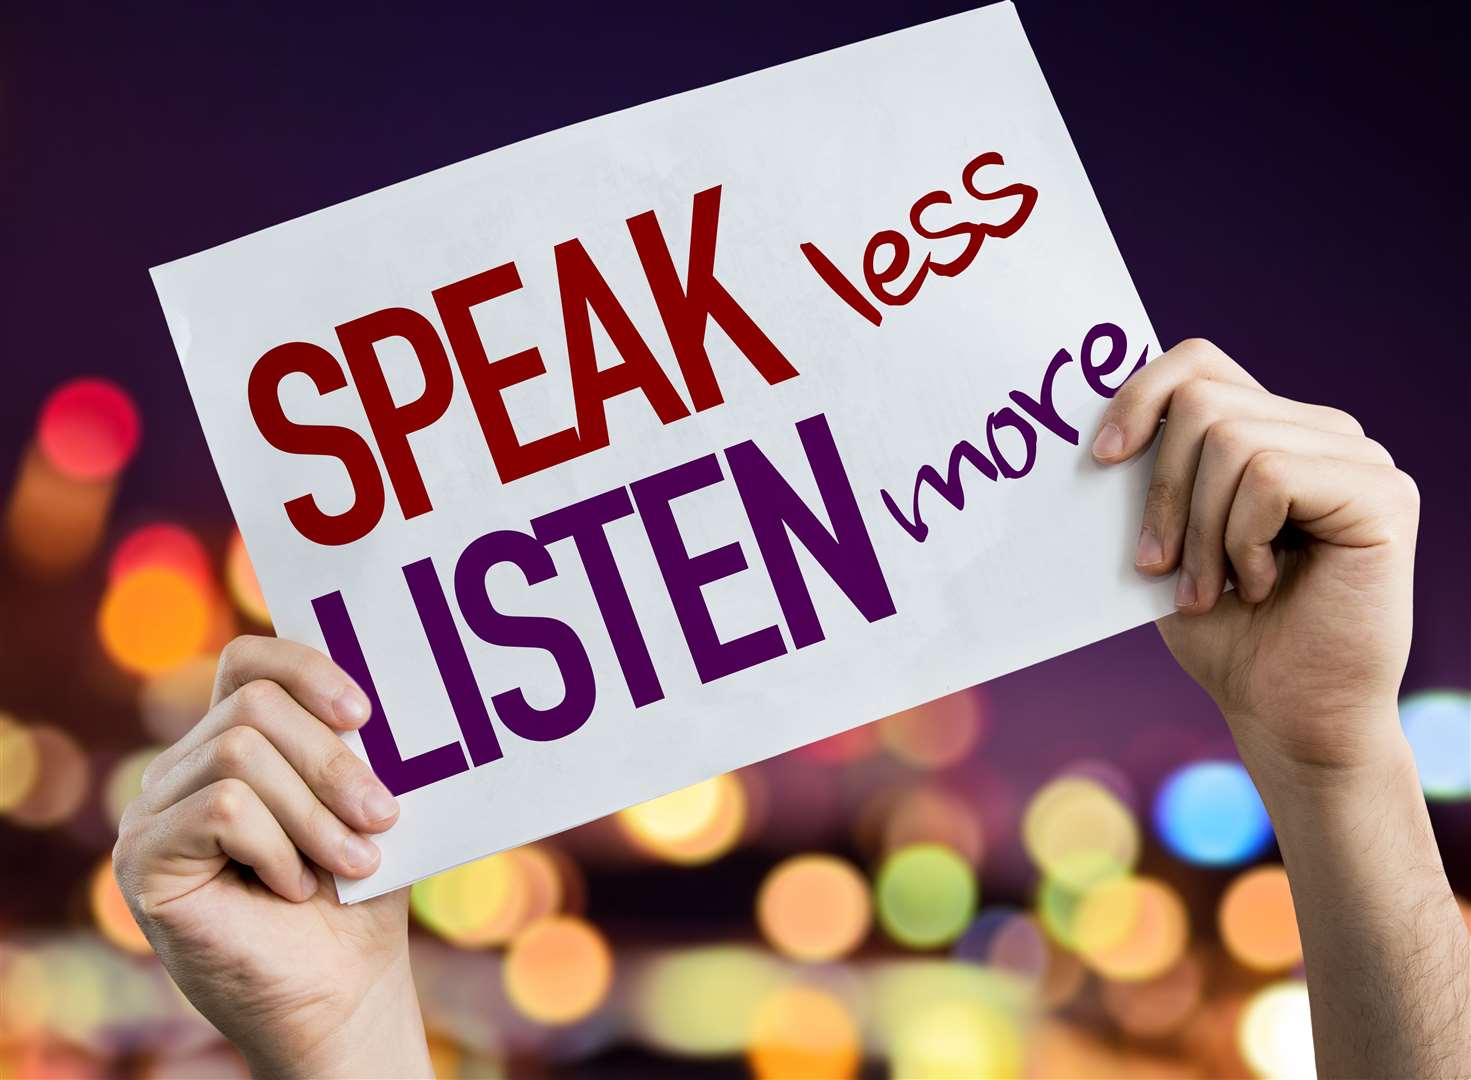 Speak Less Listen More.